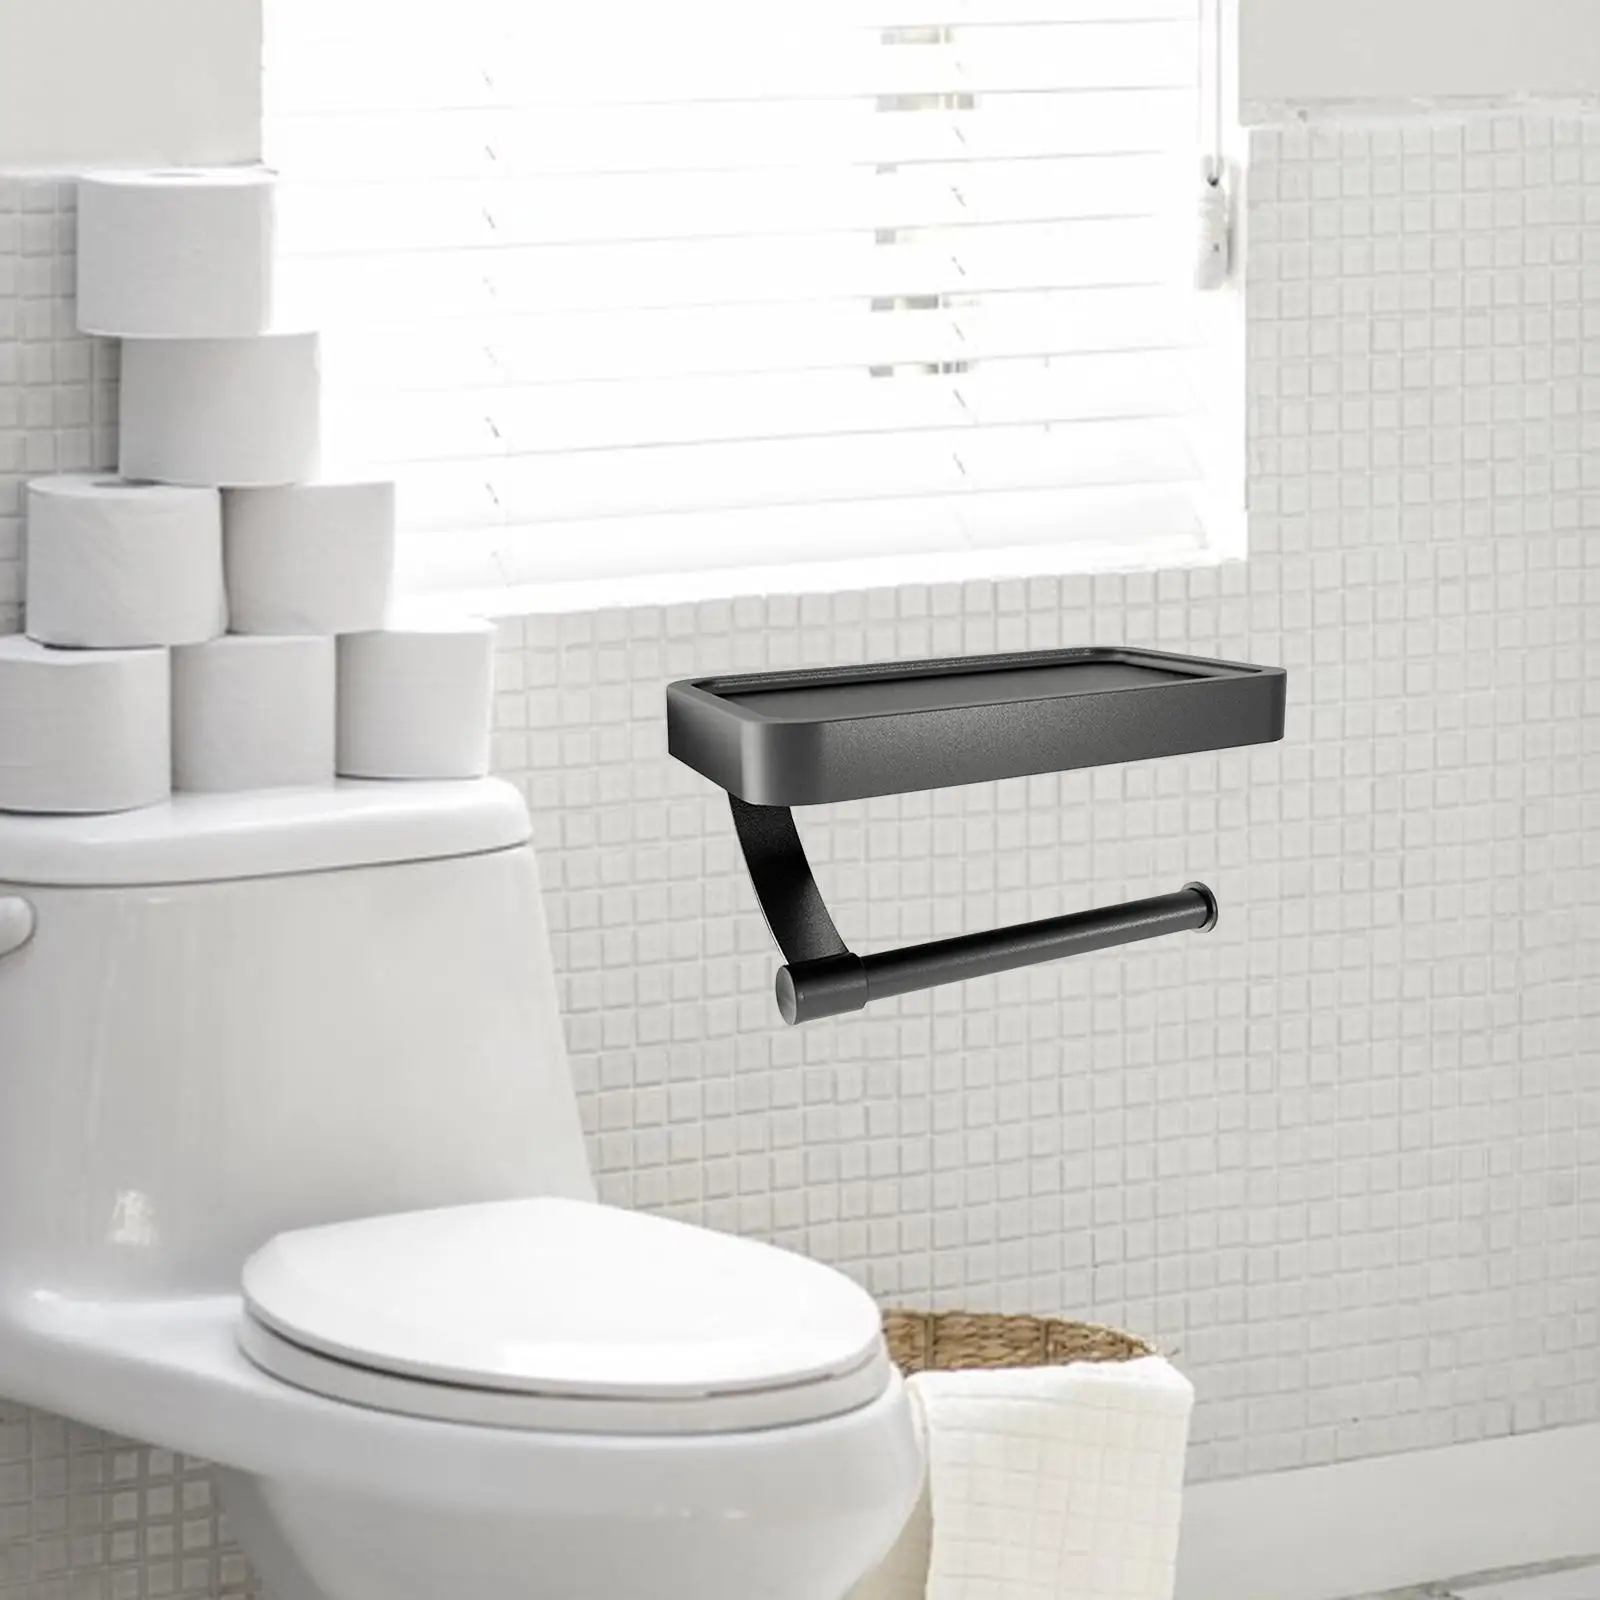 Paper Roll Holder Aluminum Shelf Multifunctional Toilet Roll Holder for Wall